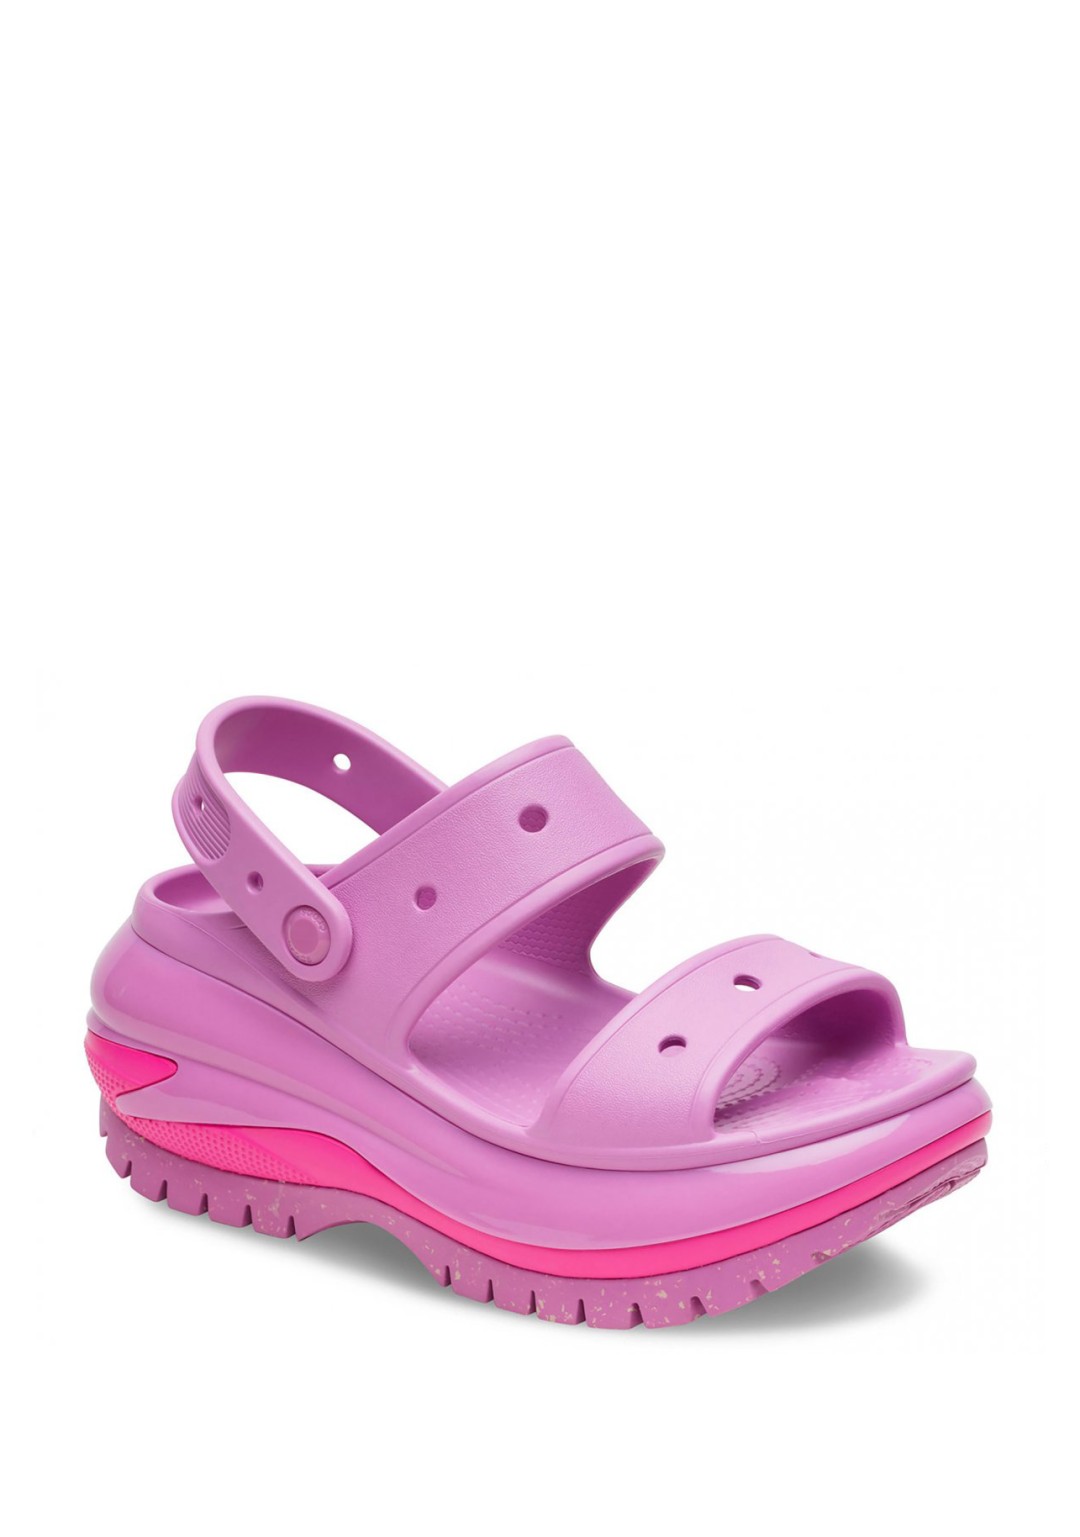 Crocs - Sandalo Platform - Donna - 207989-6WQ